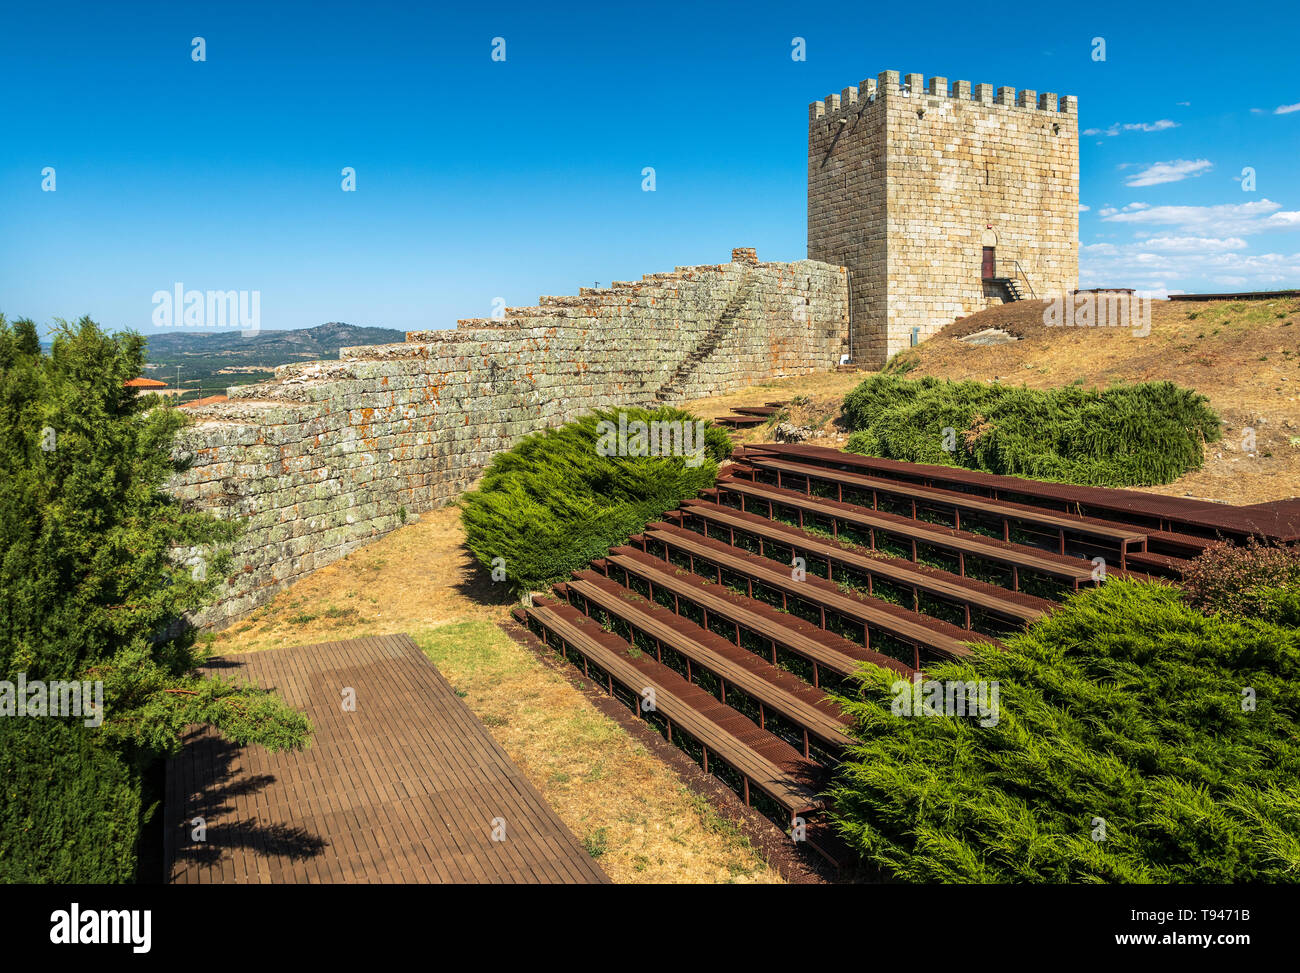 Celorico da Beira, Portugal - 15. August 2018: Blick in das Innere der Celorico da Beira Schloss, in Portugal, mit dem Amphitheater im foregro Stockfoto